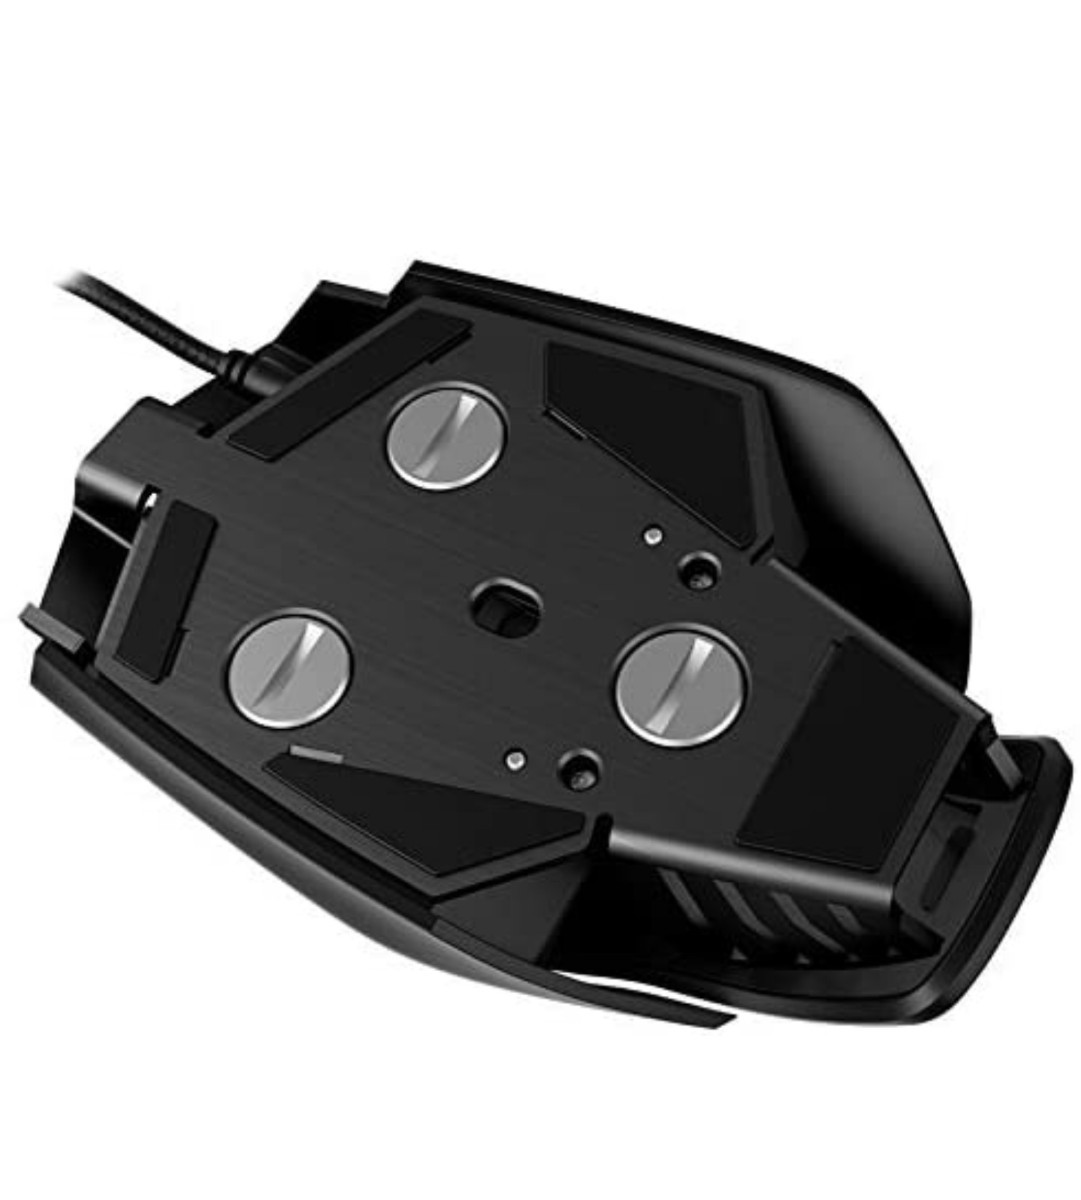 【並行輸入品、動作正常】Corsair コルセア 光学式ゲーミングマウス M65 PRO RGB 